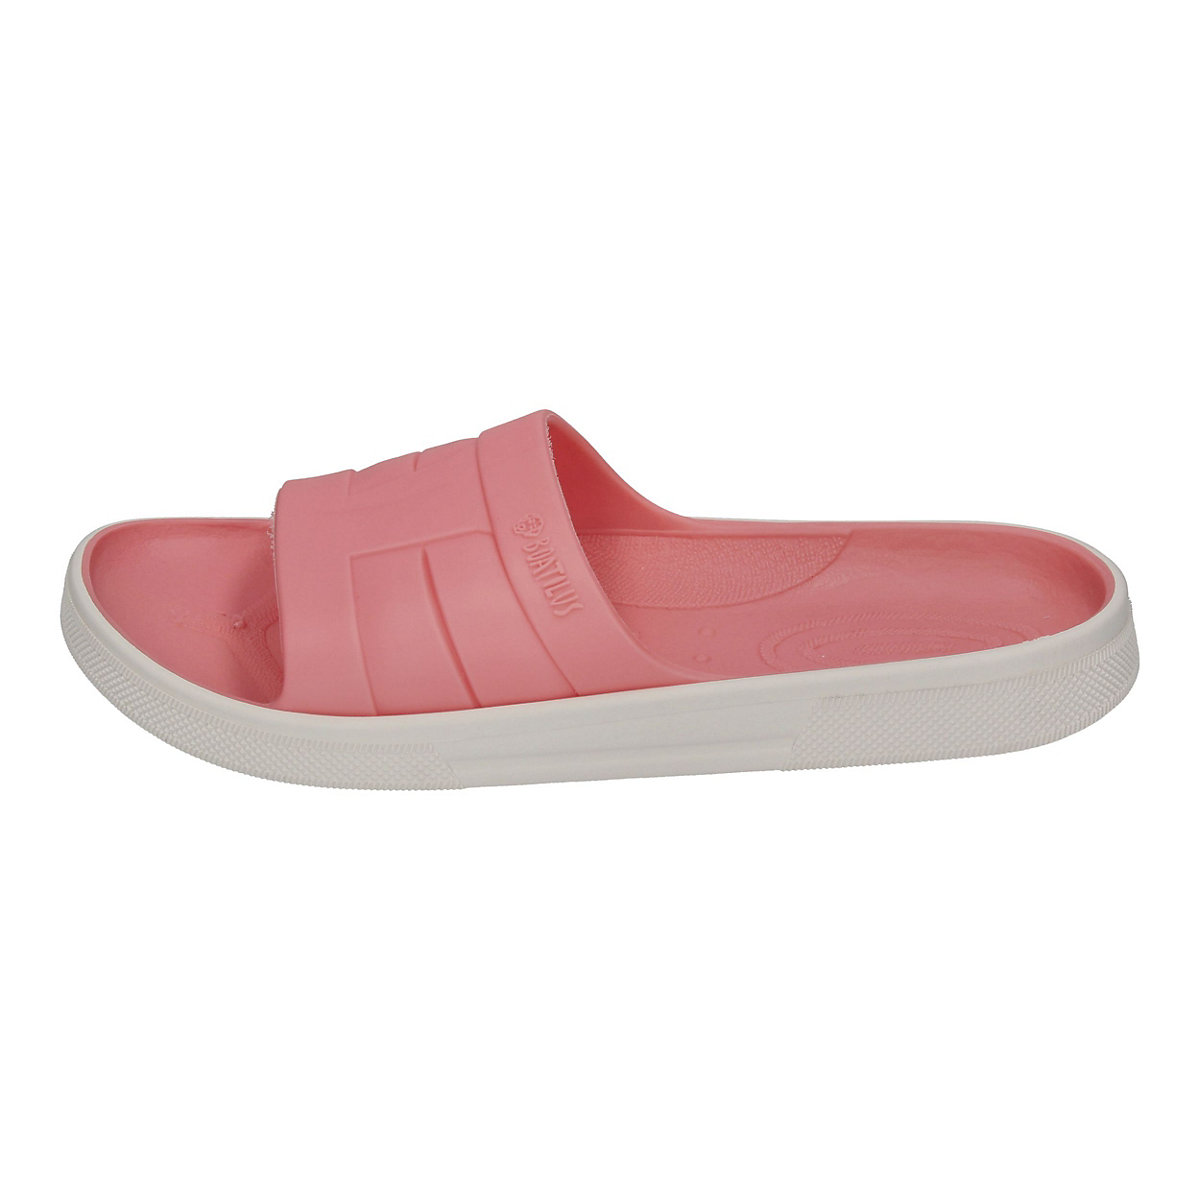 BOATILUS Badelatschen SLIDY für Mädchen rosa Modell 1 GV8102